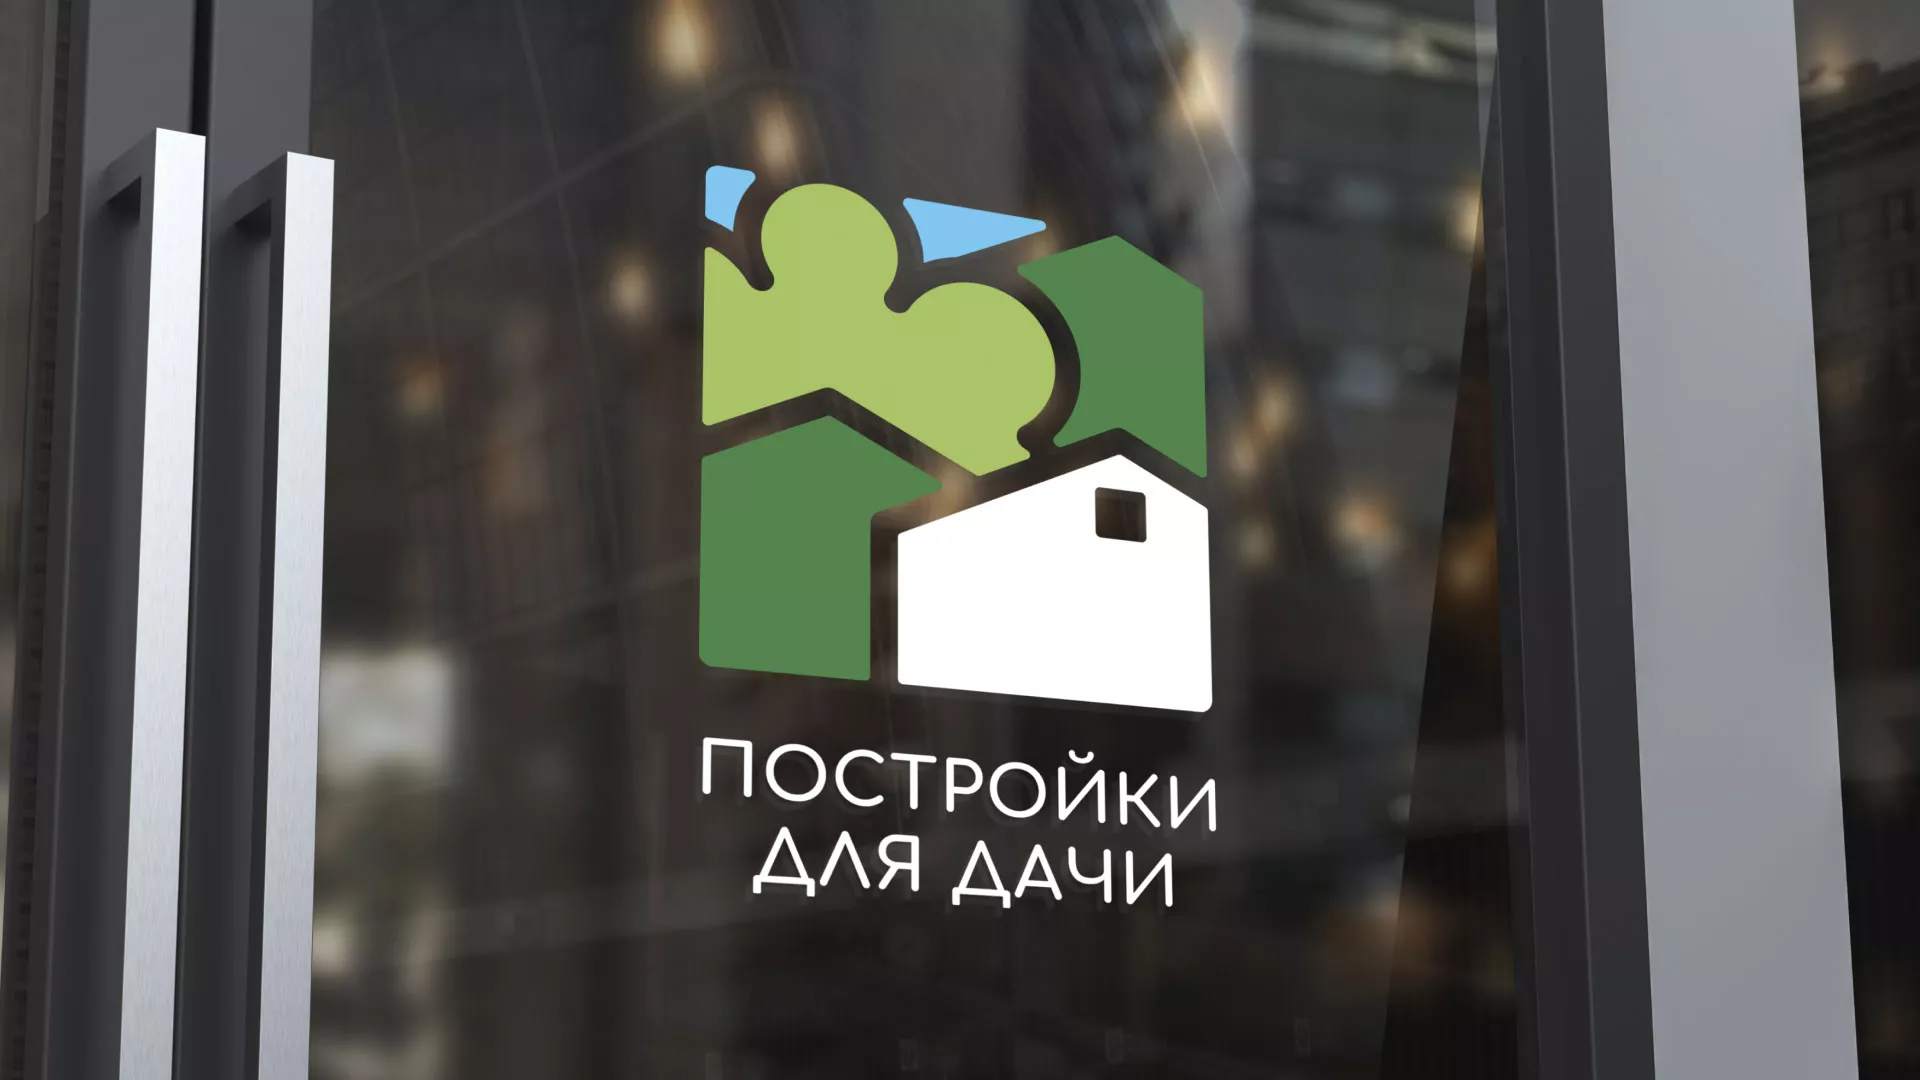 Разработка логотипа в Пошехонье для компании «Постройки для дачи»